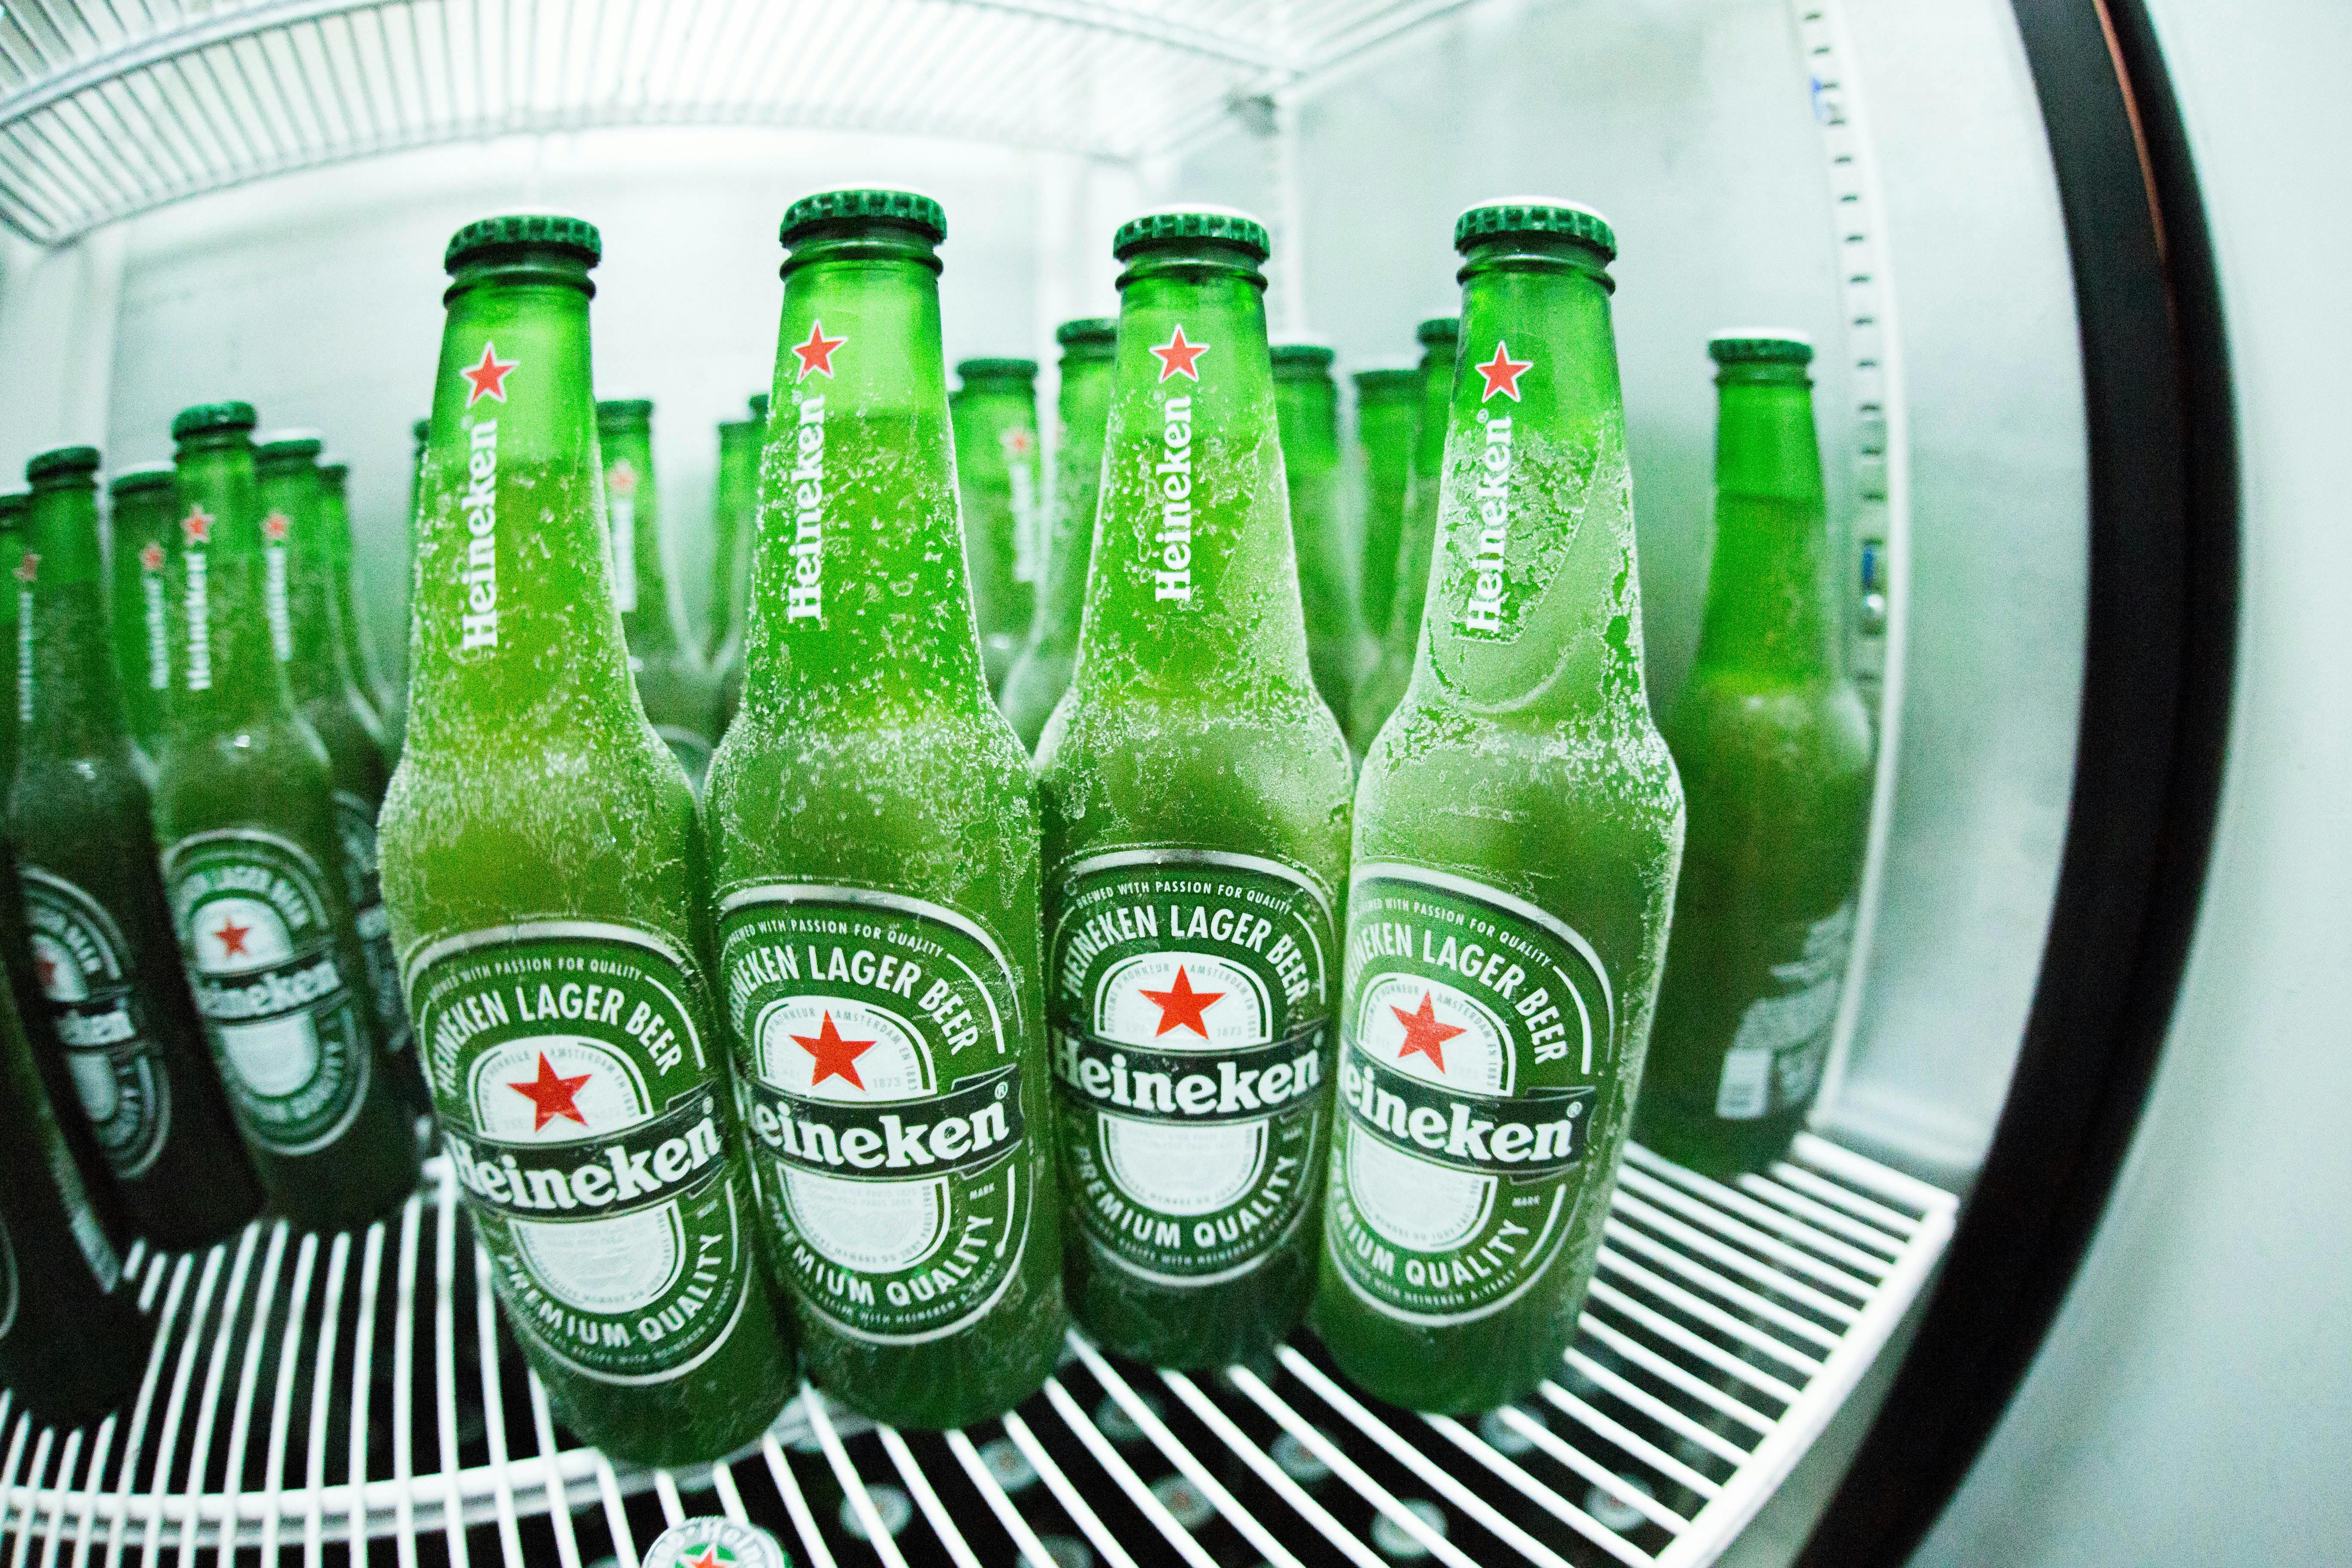 30+ ảnh đẹp nhất về Heineken · Tải xuống miễn phí 100% · Ảnh có sẵn của  Pexels